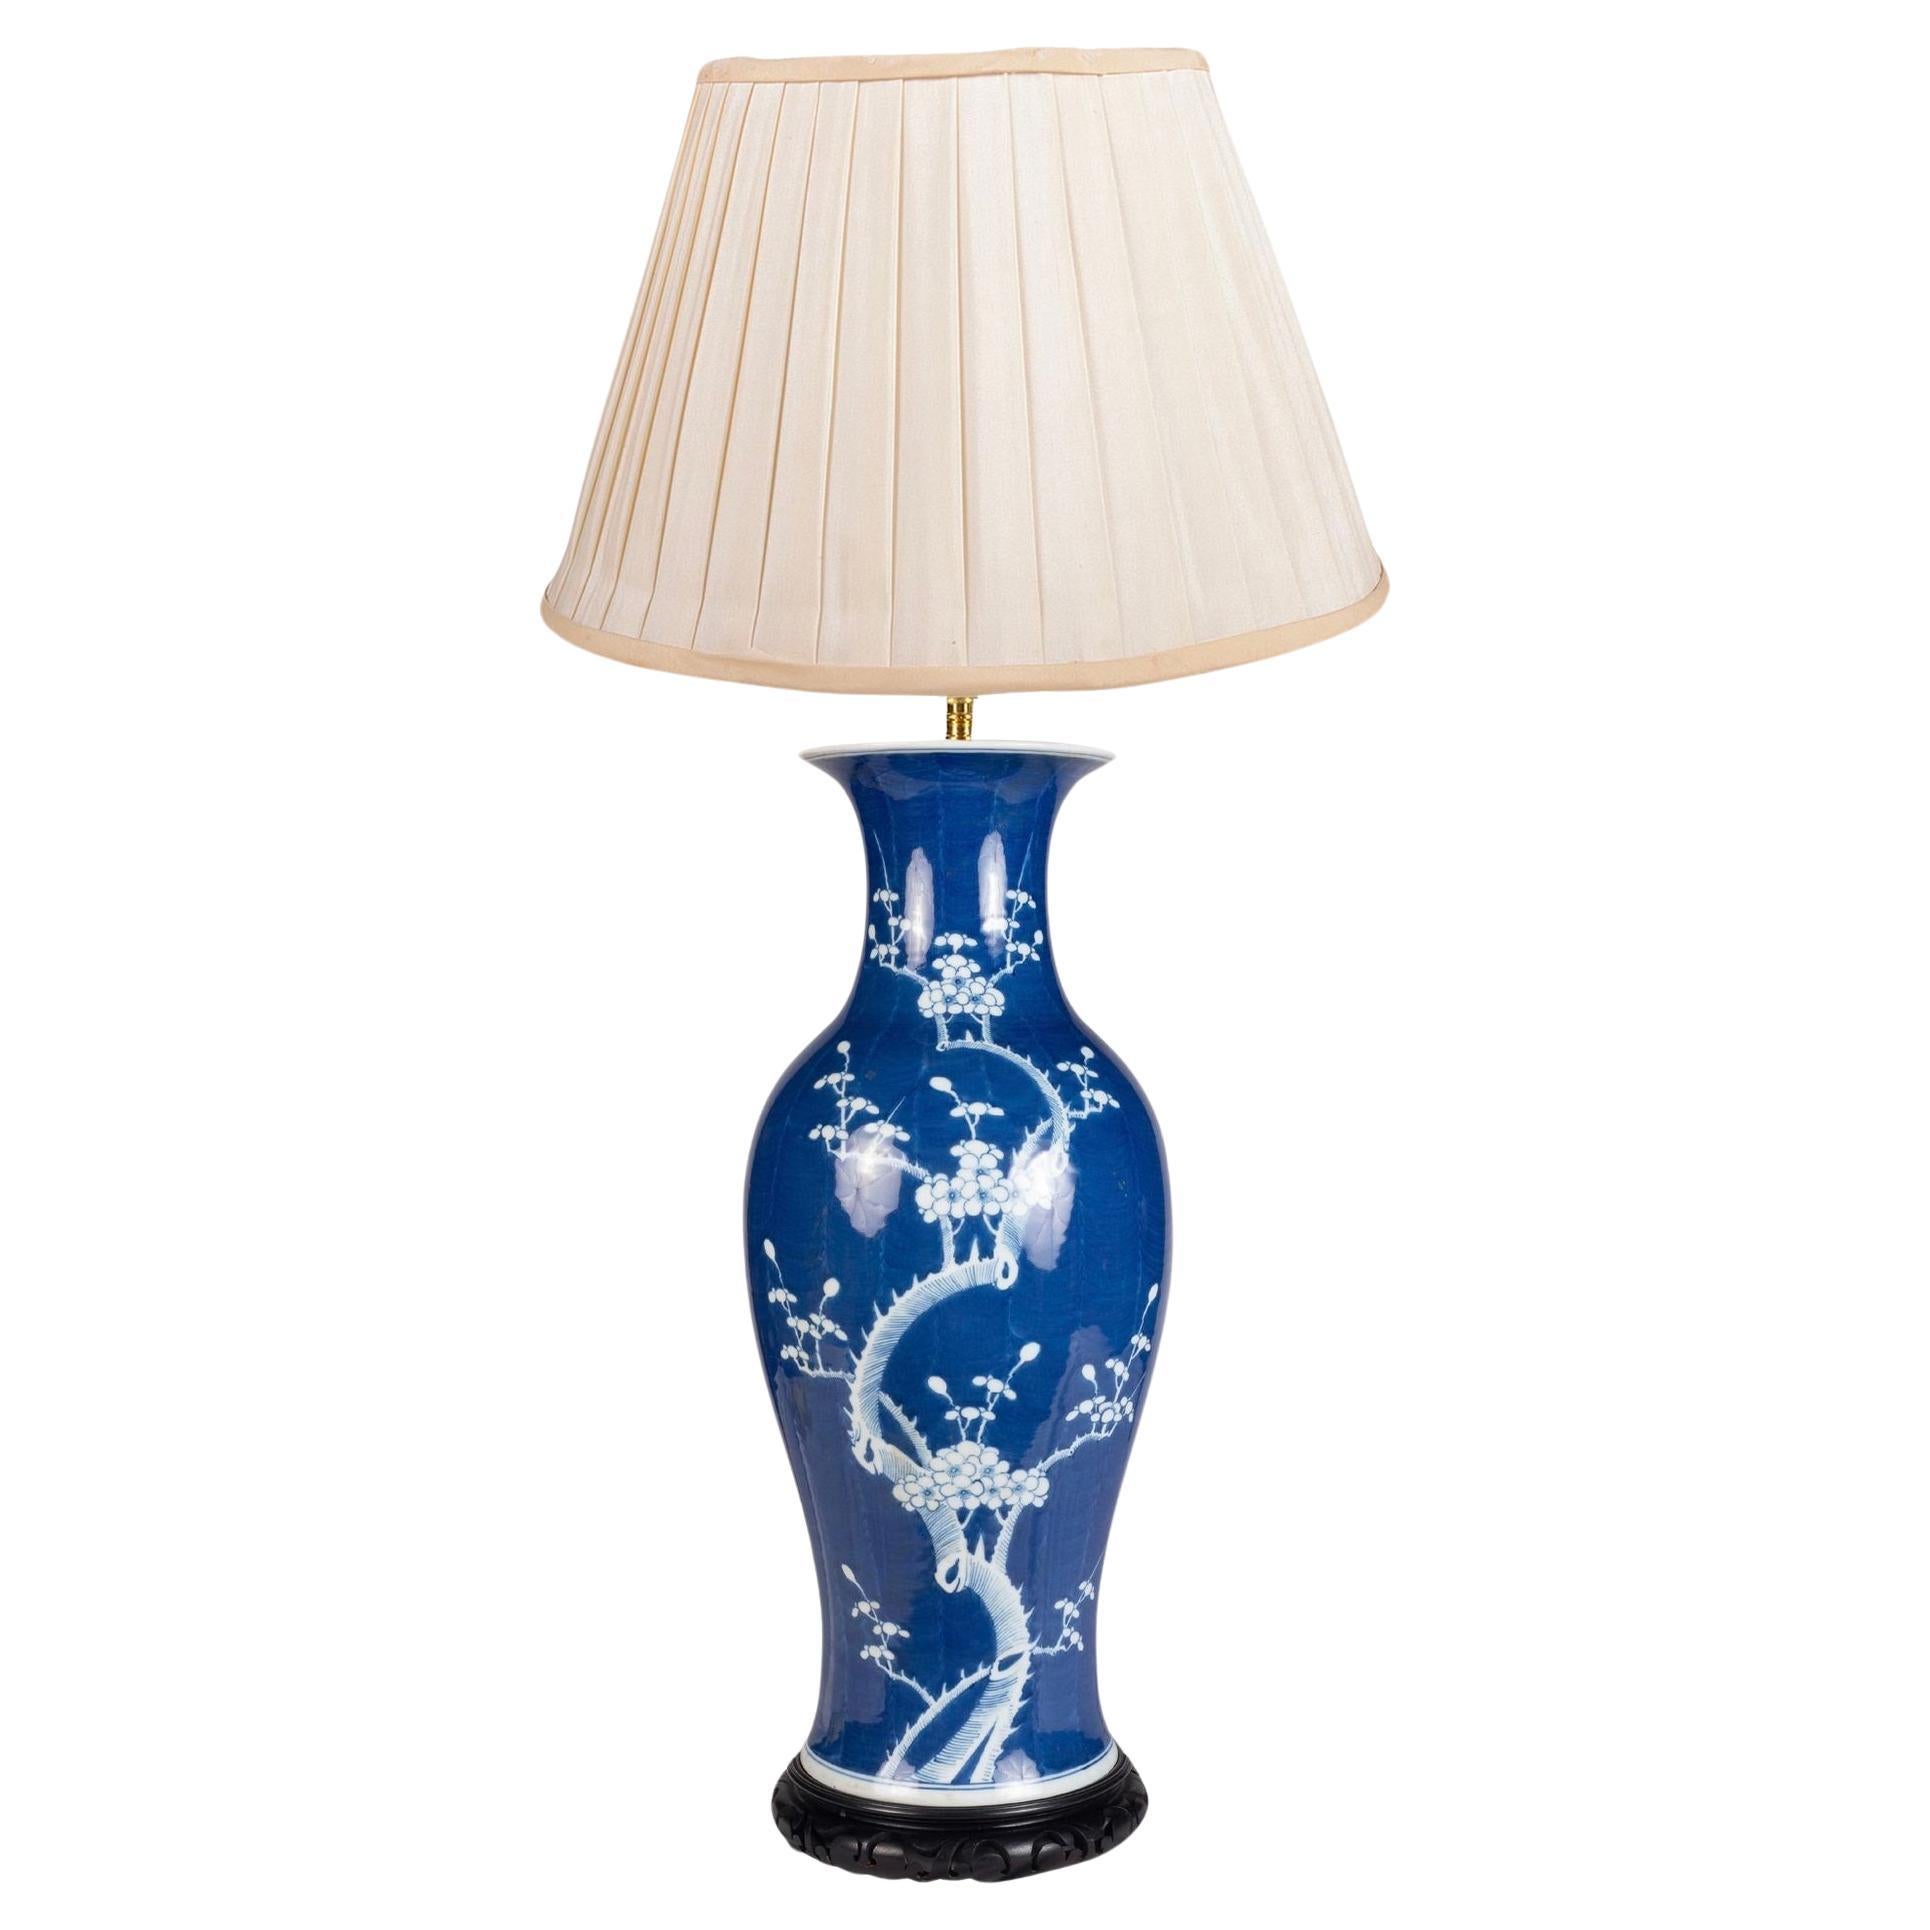 Chinese Blue and White Prunus blossom vase/lamp, circa 1890.